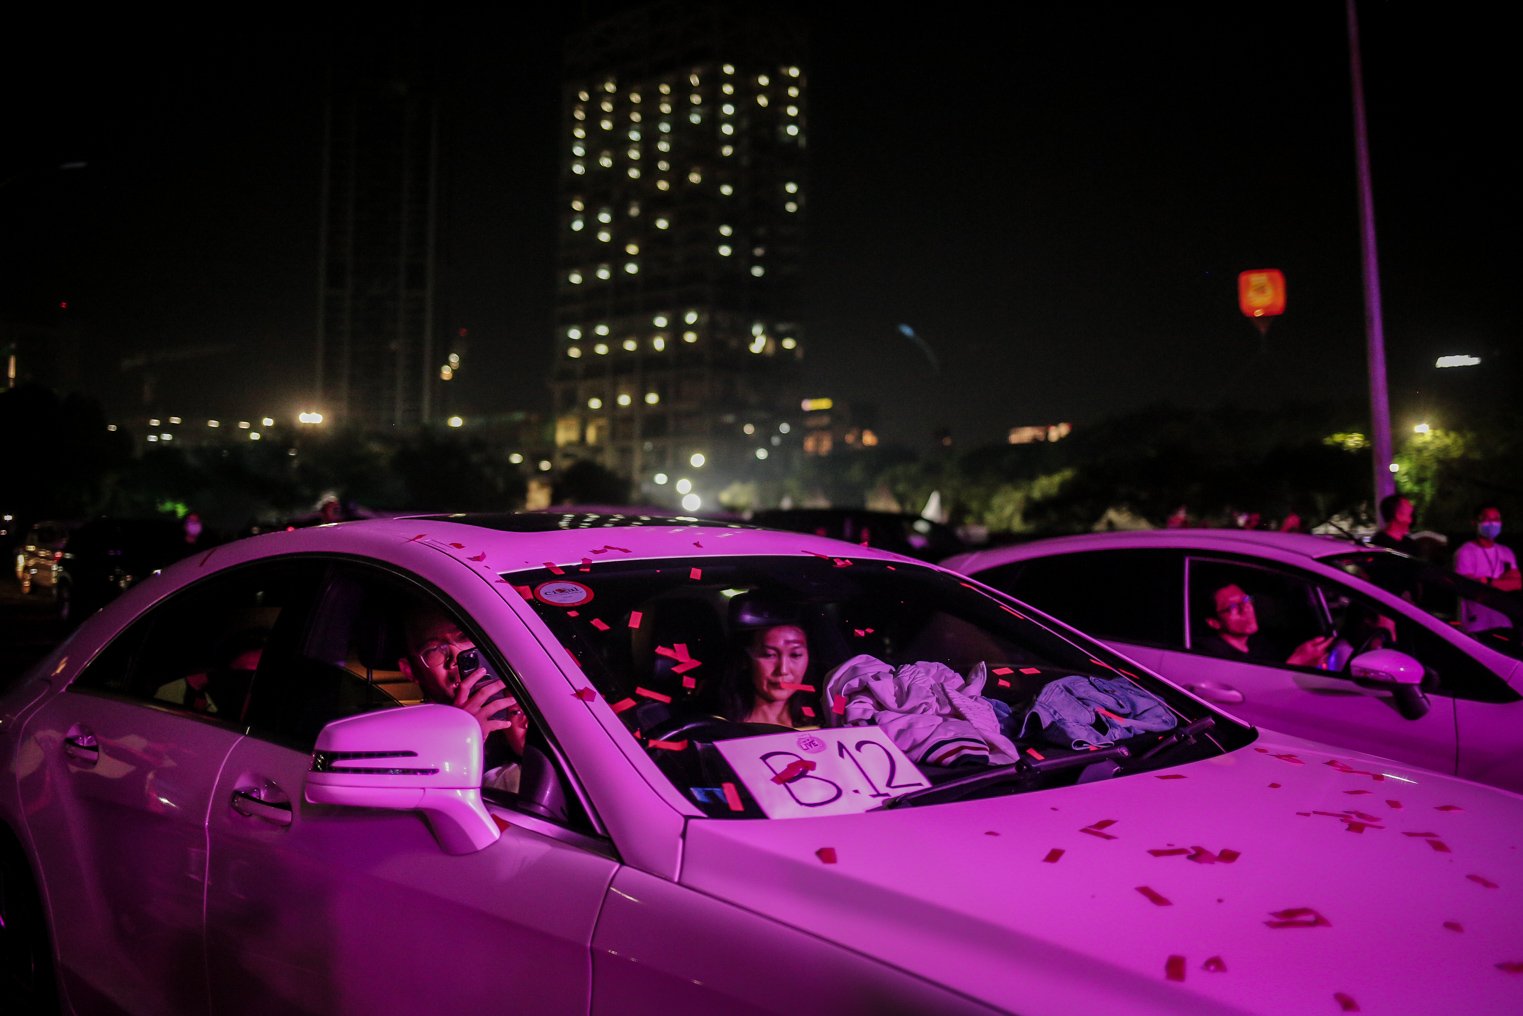 Pengunjung menikmati penampilan band NOAH dalam konser Drive-in di Parkir Barat Ji-Expo Kemayoran, Jakarta, Sabtu (20/11/2021). Konser #SafetyAndSpectacular dengan konsep Hybrid Show (Offline dan Online) ini menampilkan musisi ternama Tanah Air, seperti Bunga Citra Lestari, NOAH, dan Tulus.